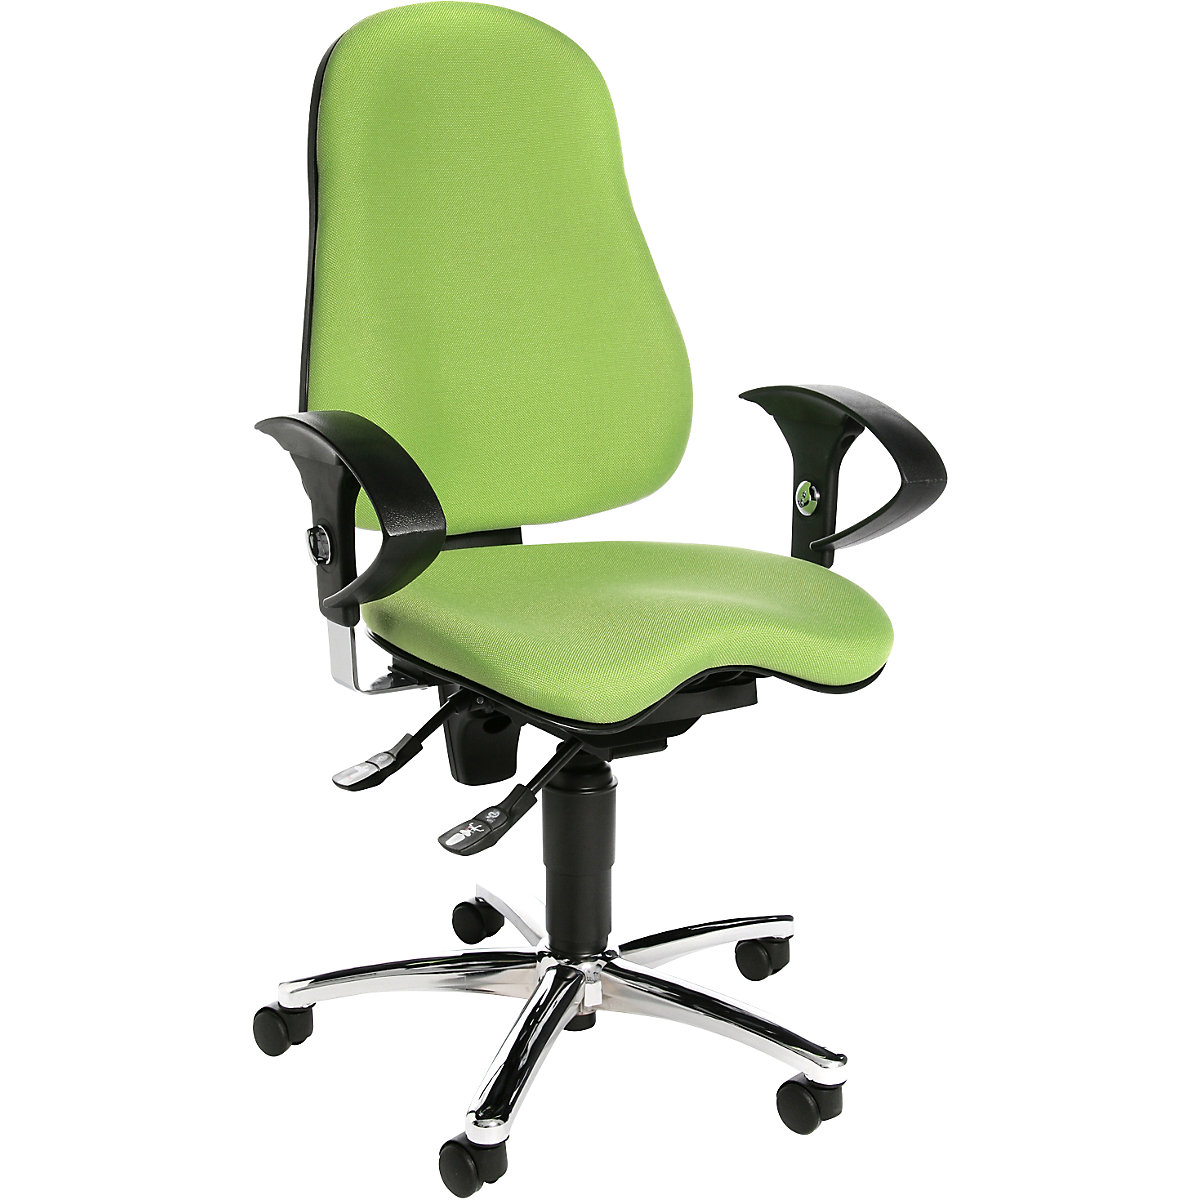 Cadeira giratória de escritório SITNESS 10 – Topstar, com apoios para braços ajustáveis, verde maçã-4